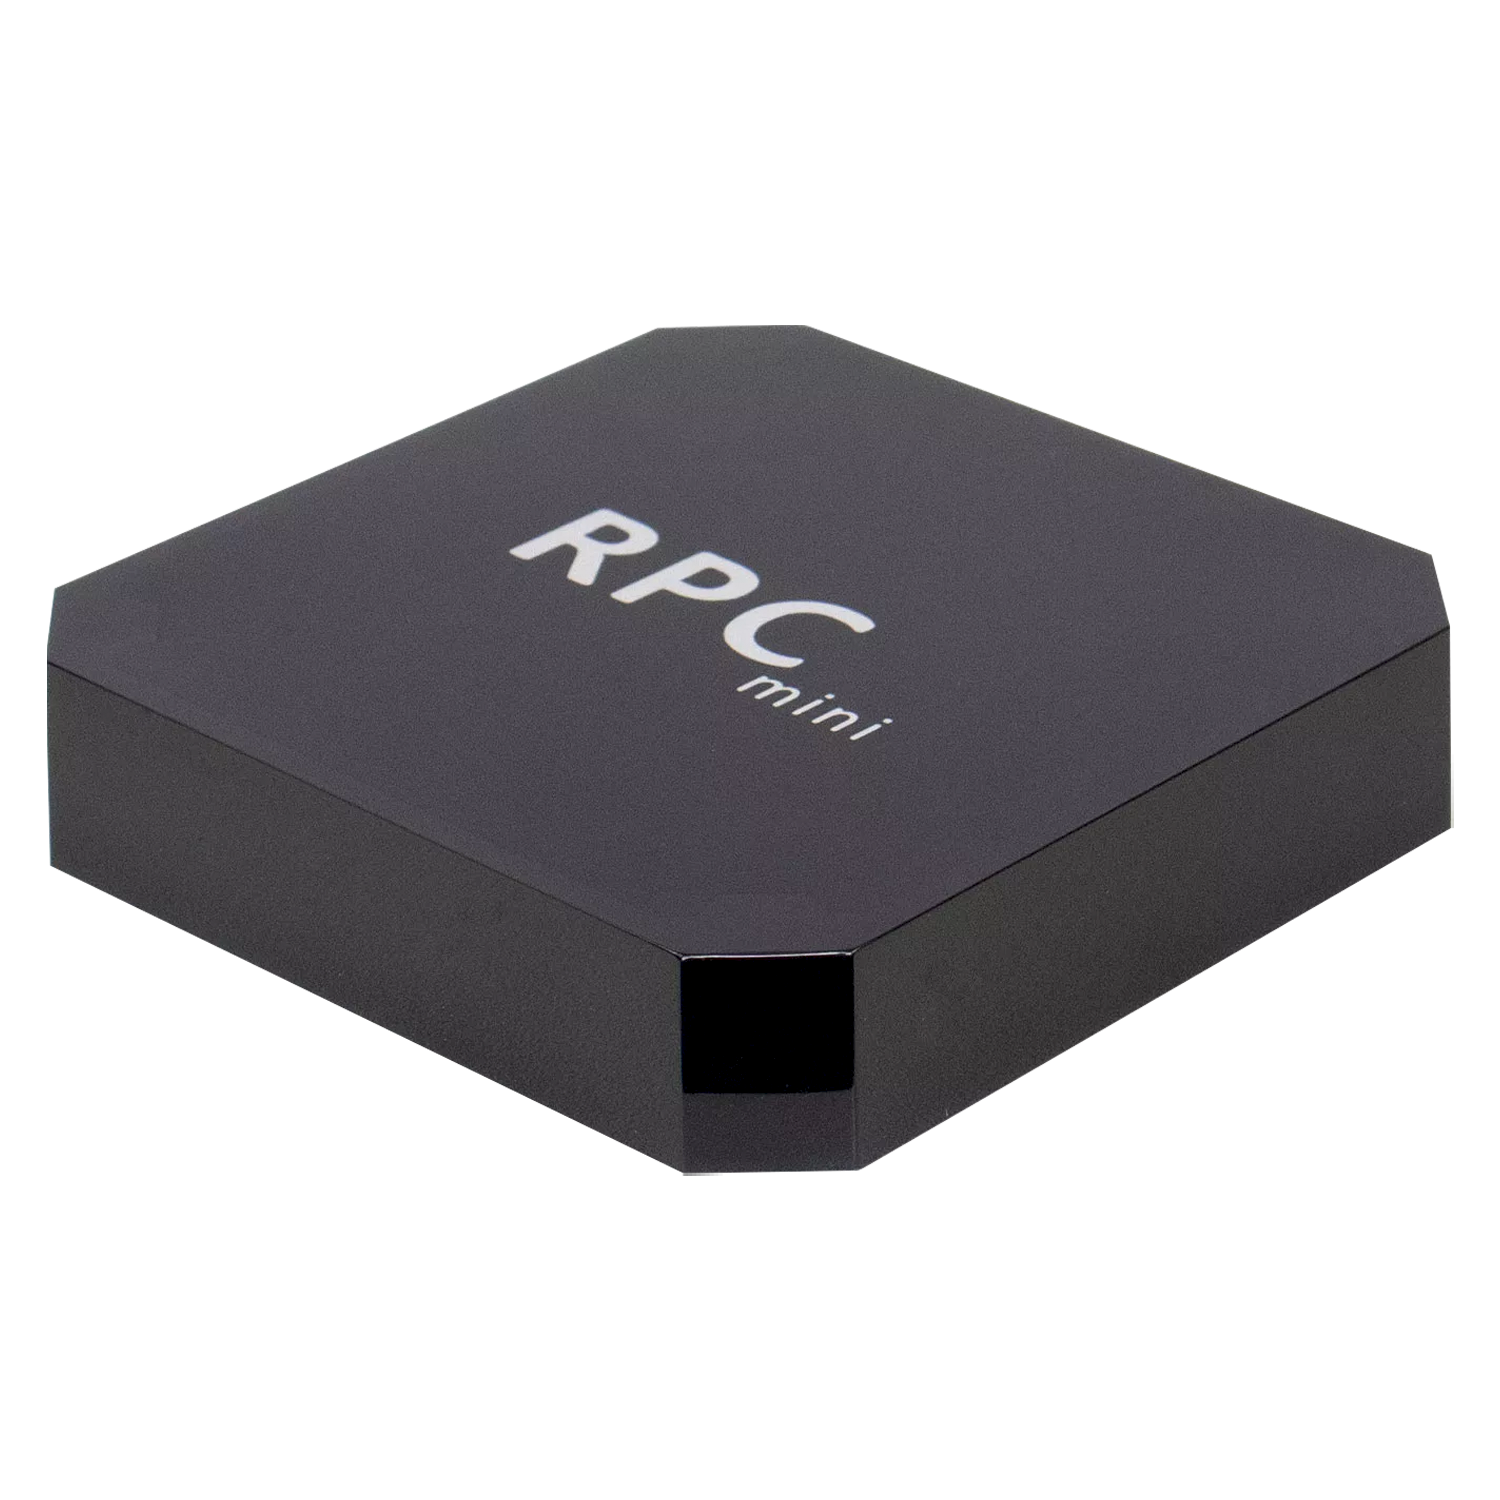 TV Box RPC Mini 16GB de RAM / 128GB / UHD / 8K - Preto no Paraguai - Visão  Vip Informática - Compras no Paraguai - Loja de Informática